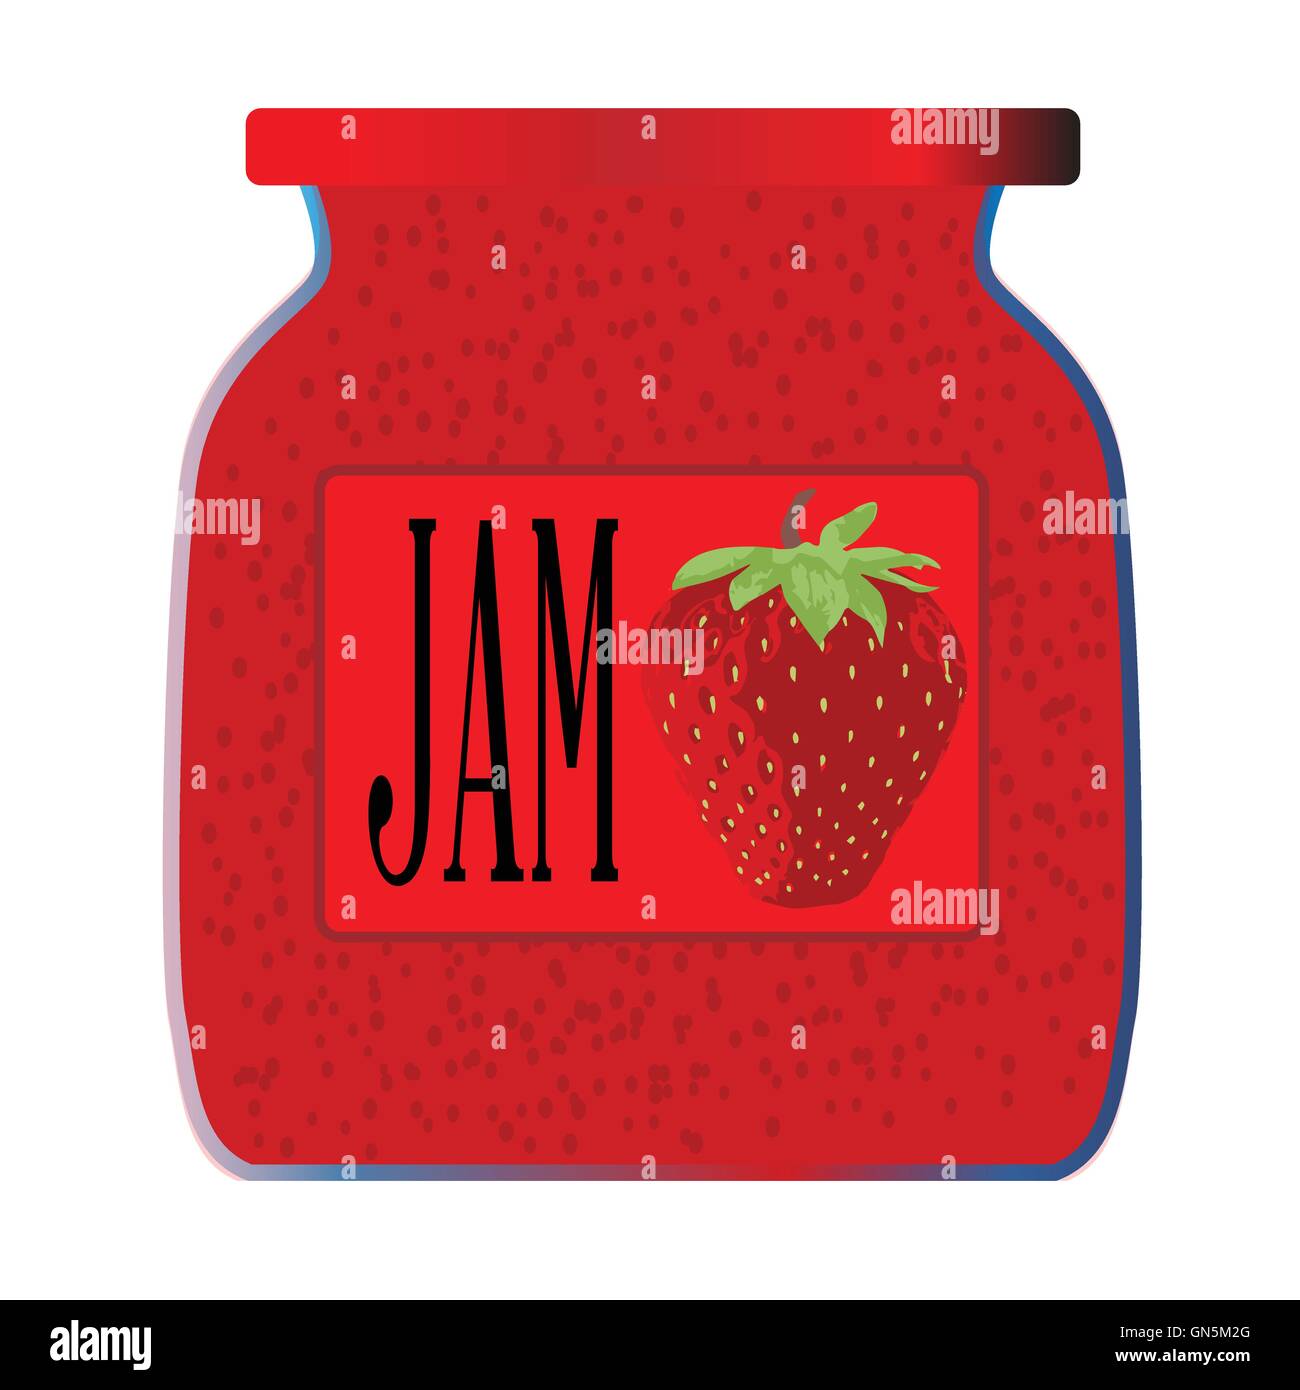 Jam Jar Stock Vector